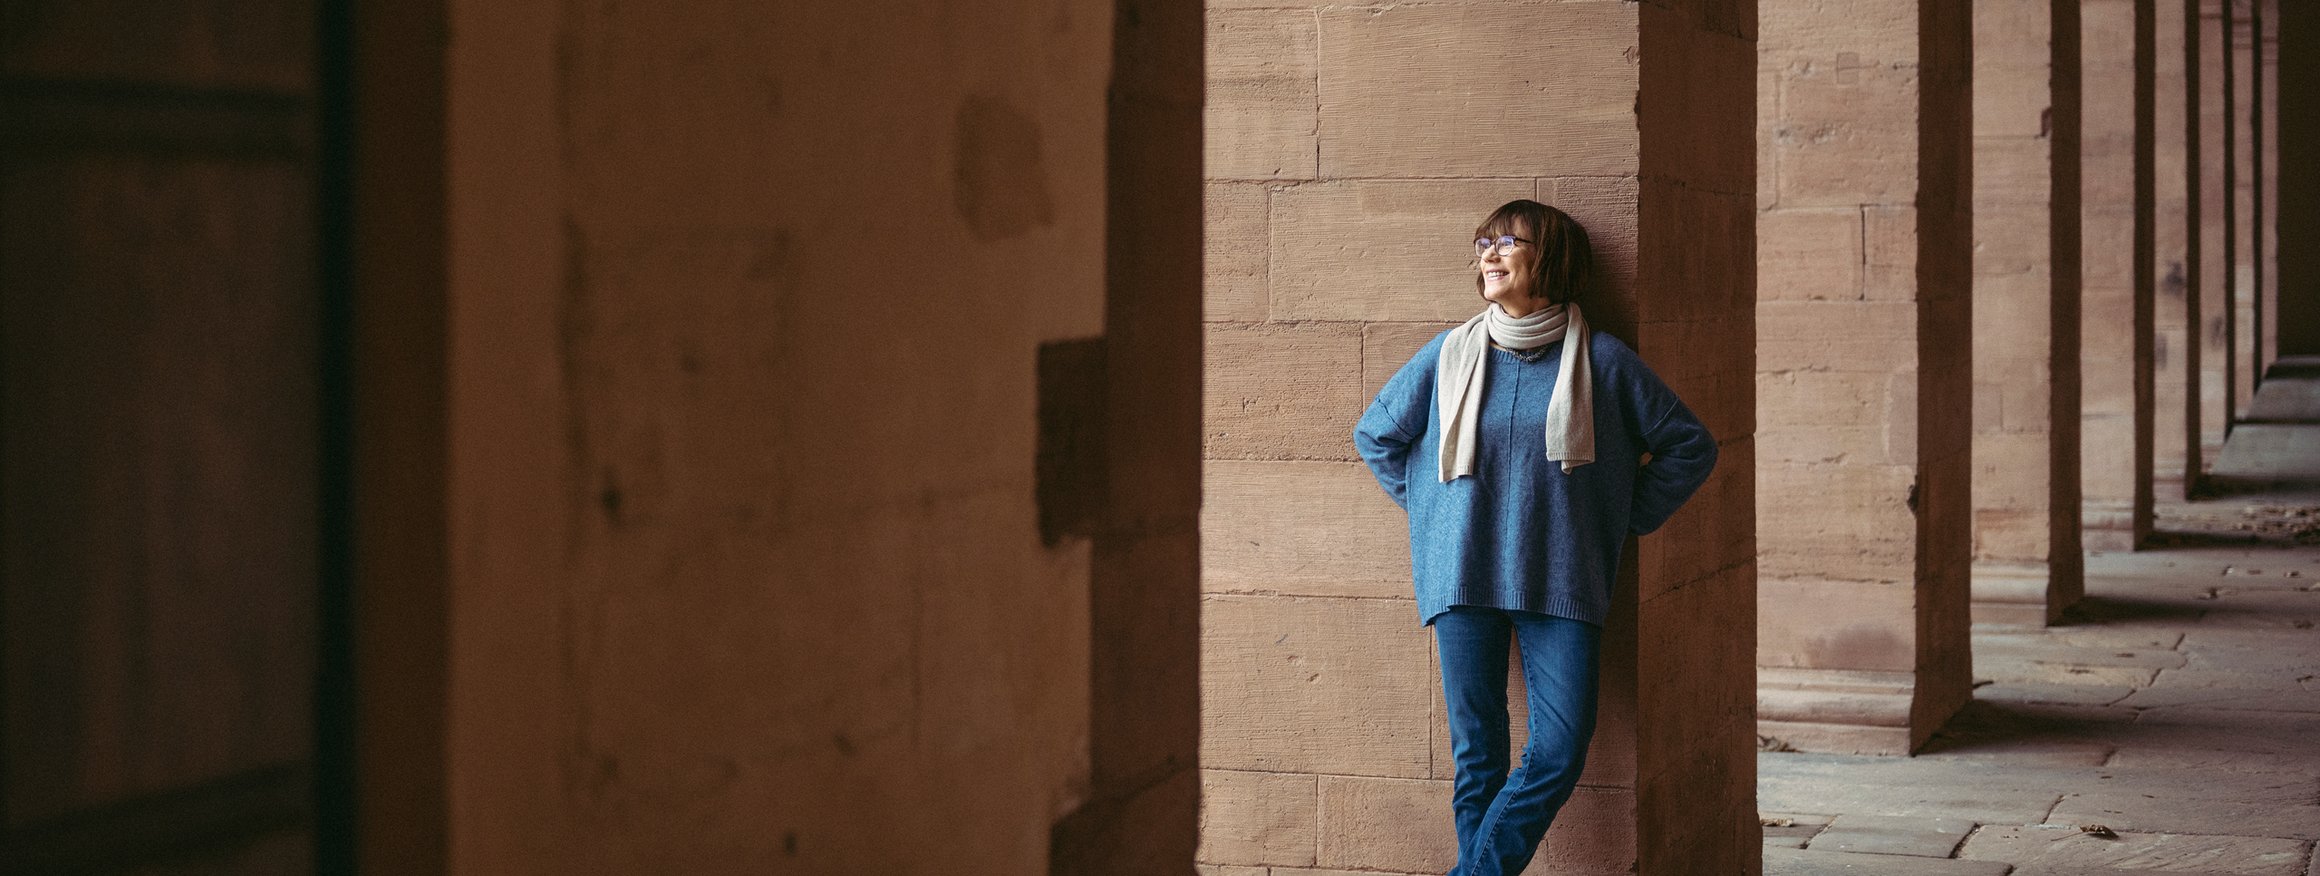 Die Historikerin Annette Kehnel steht an einem Säuleneingang an einem alten Gebäude und lächelt